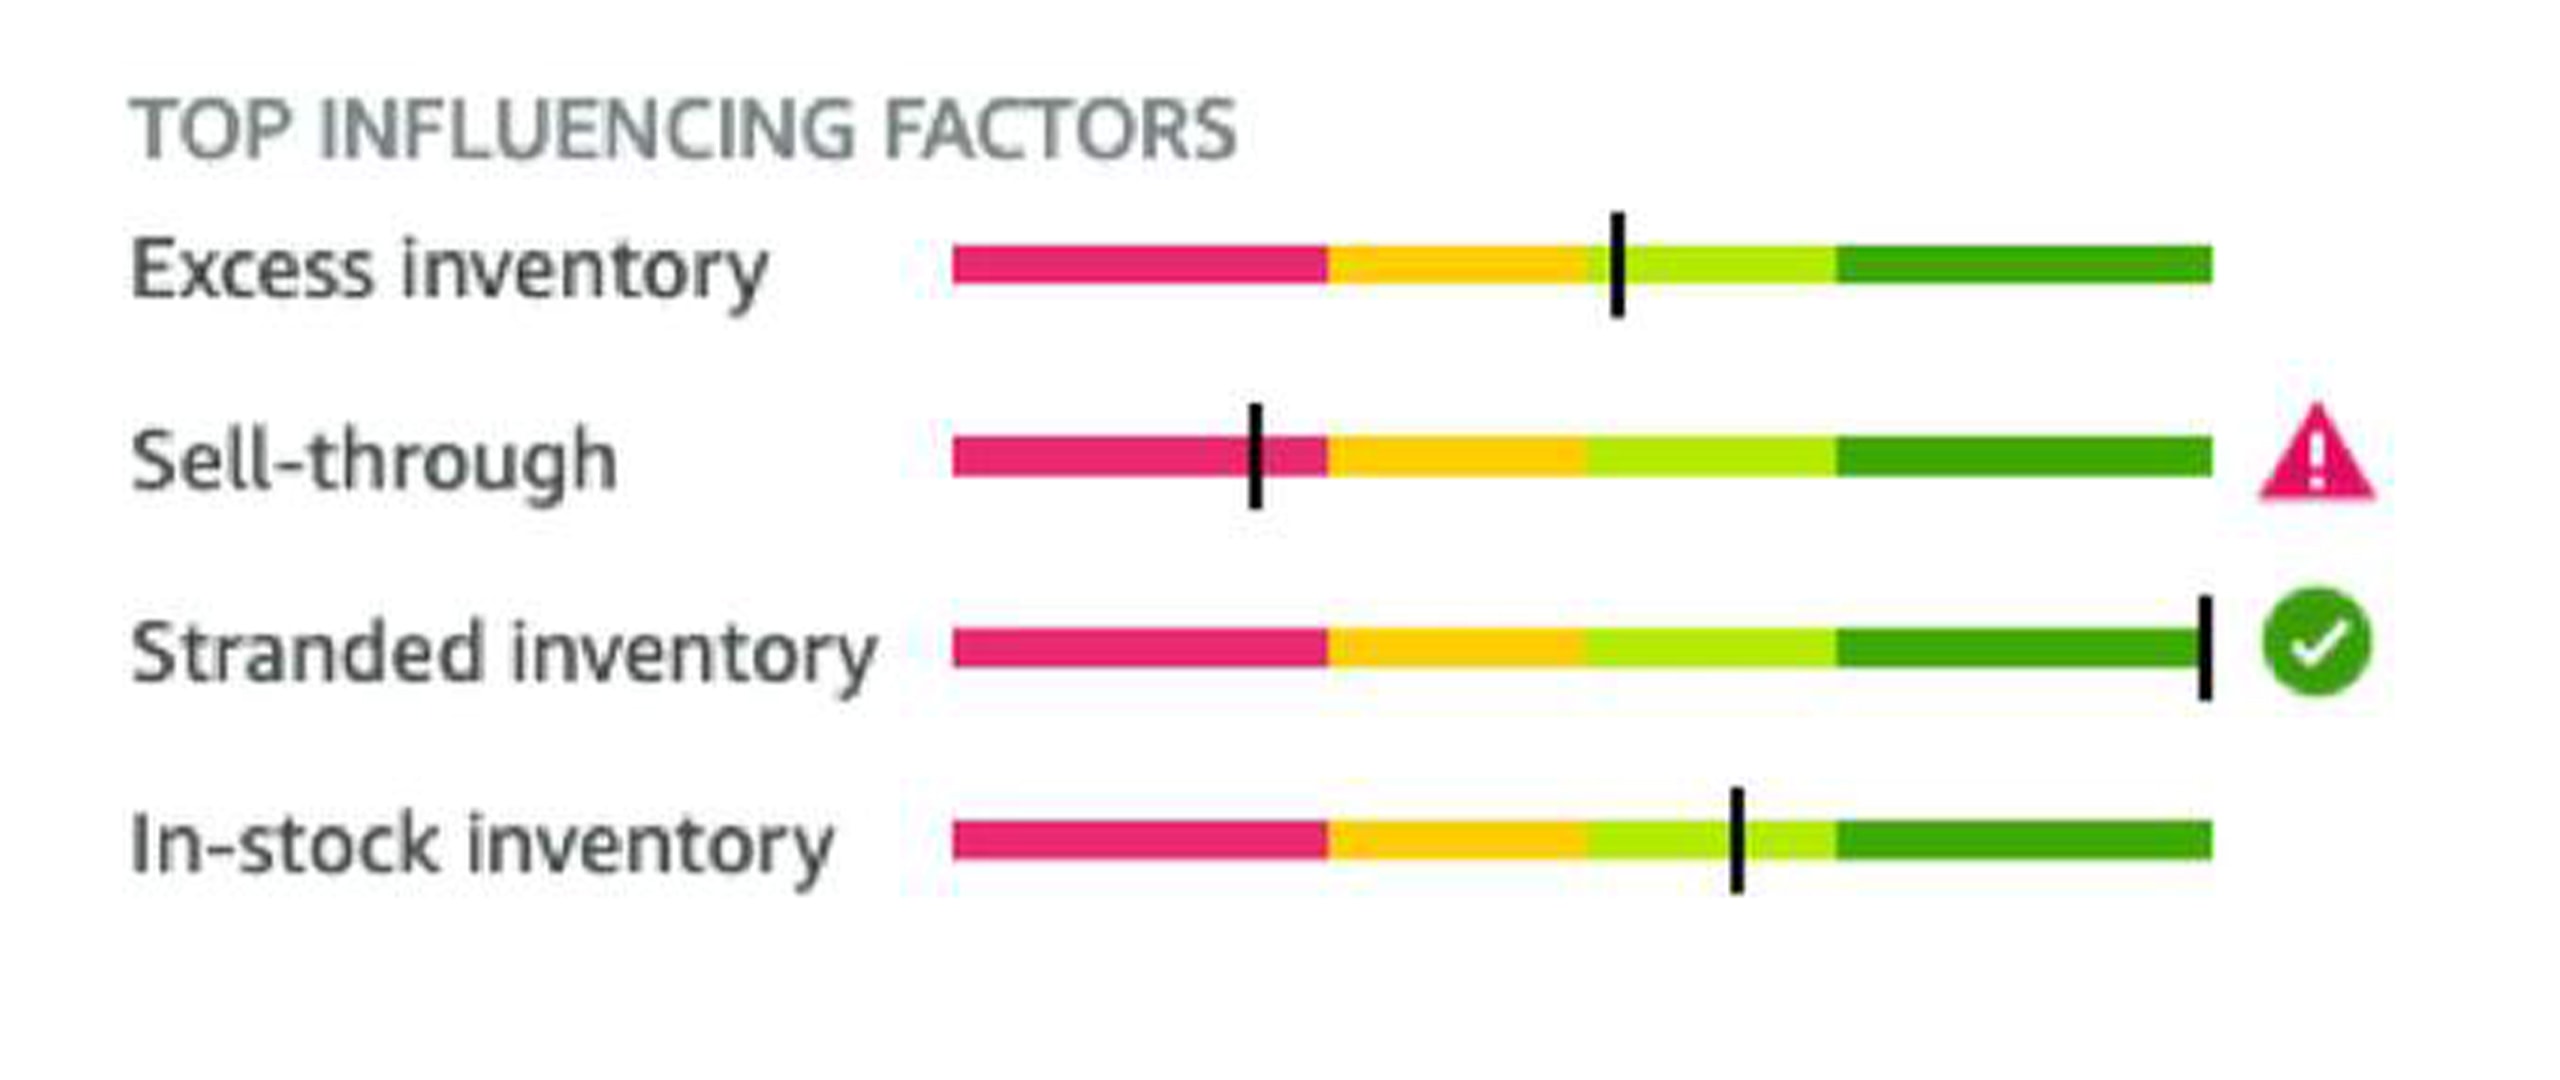 Top influencing factors line chart